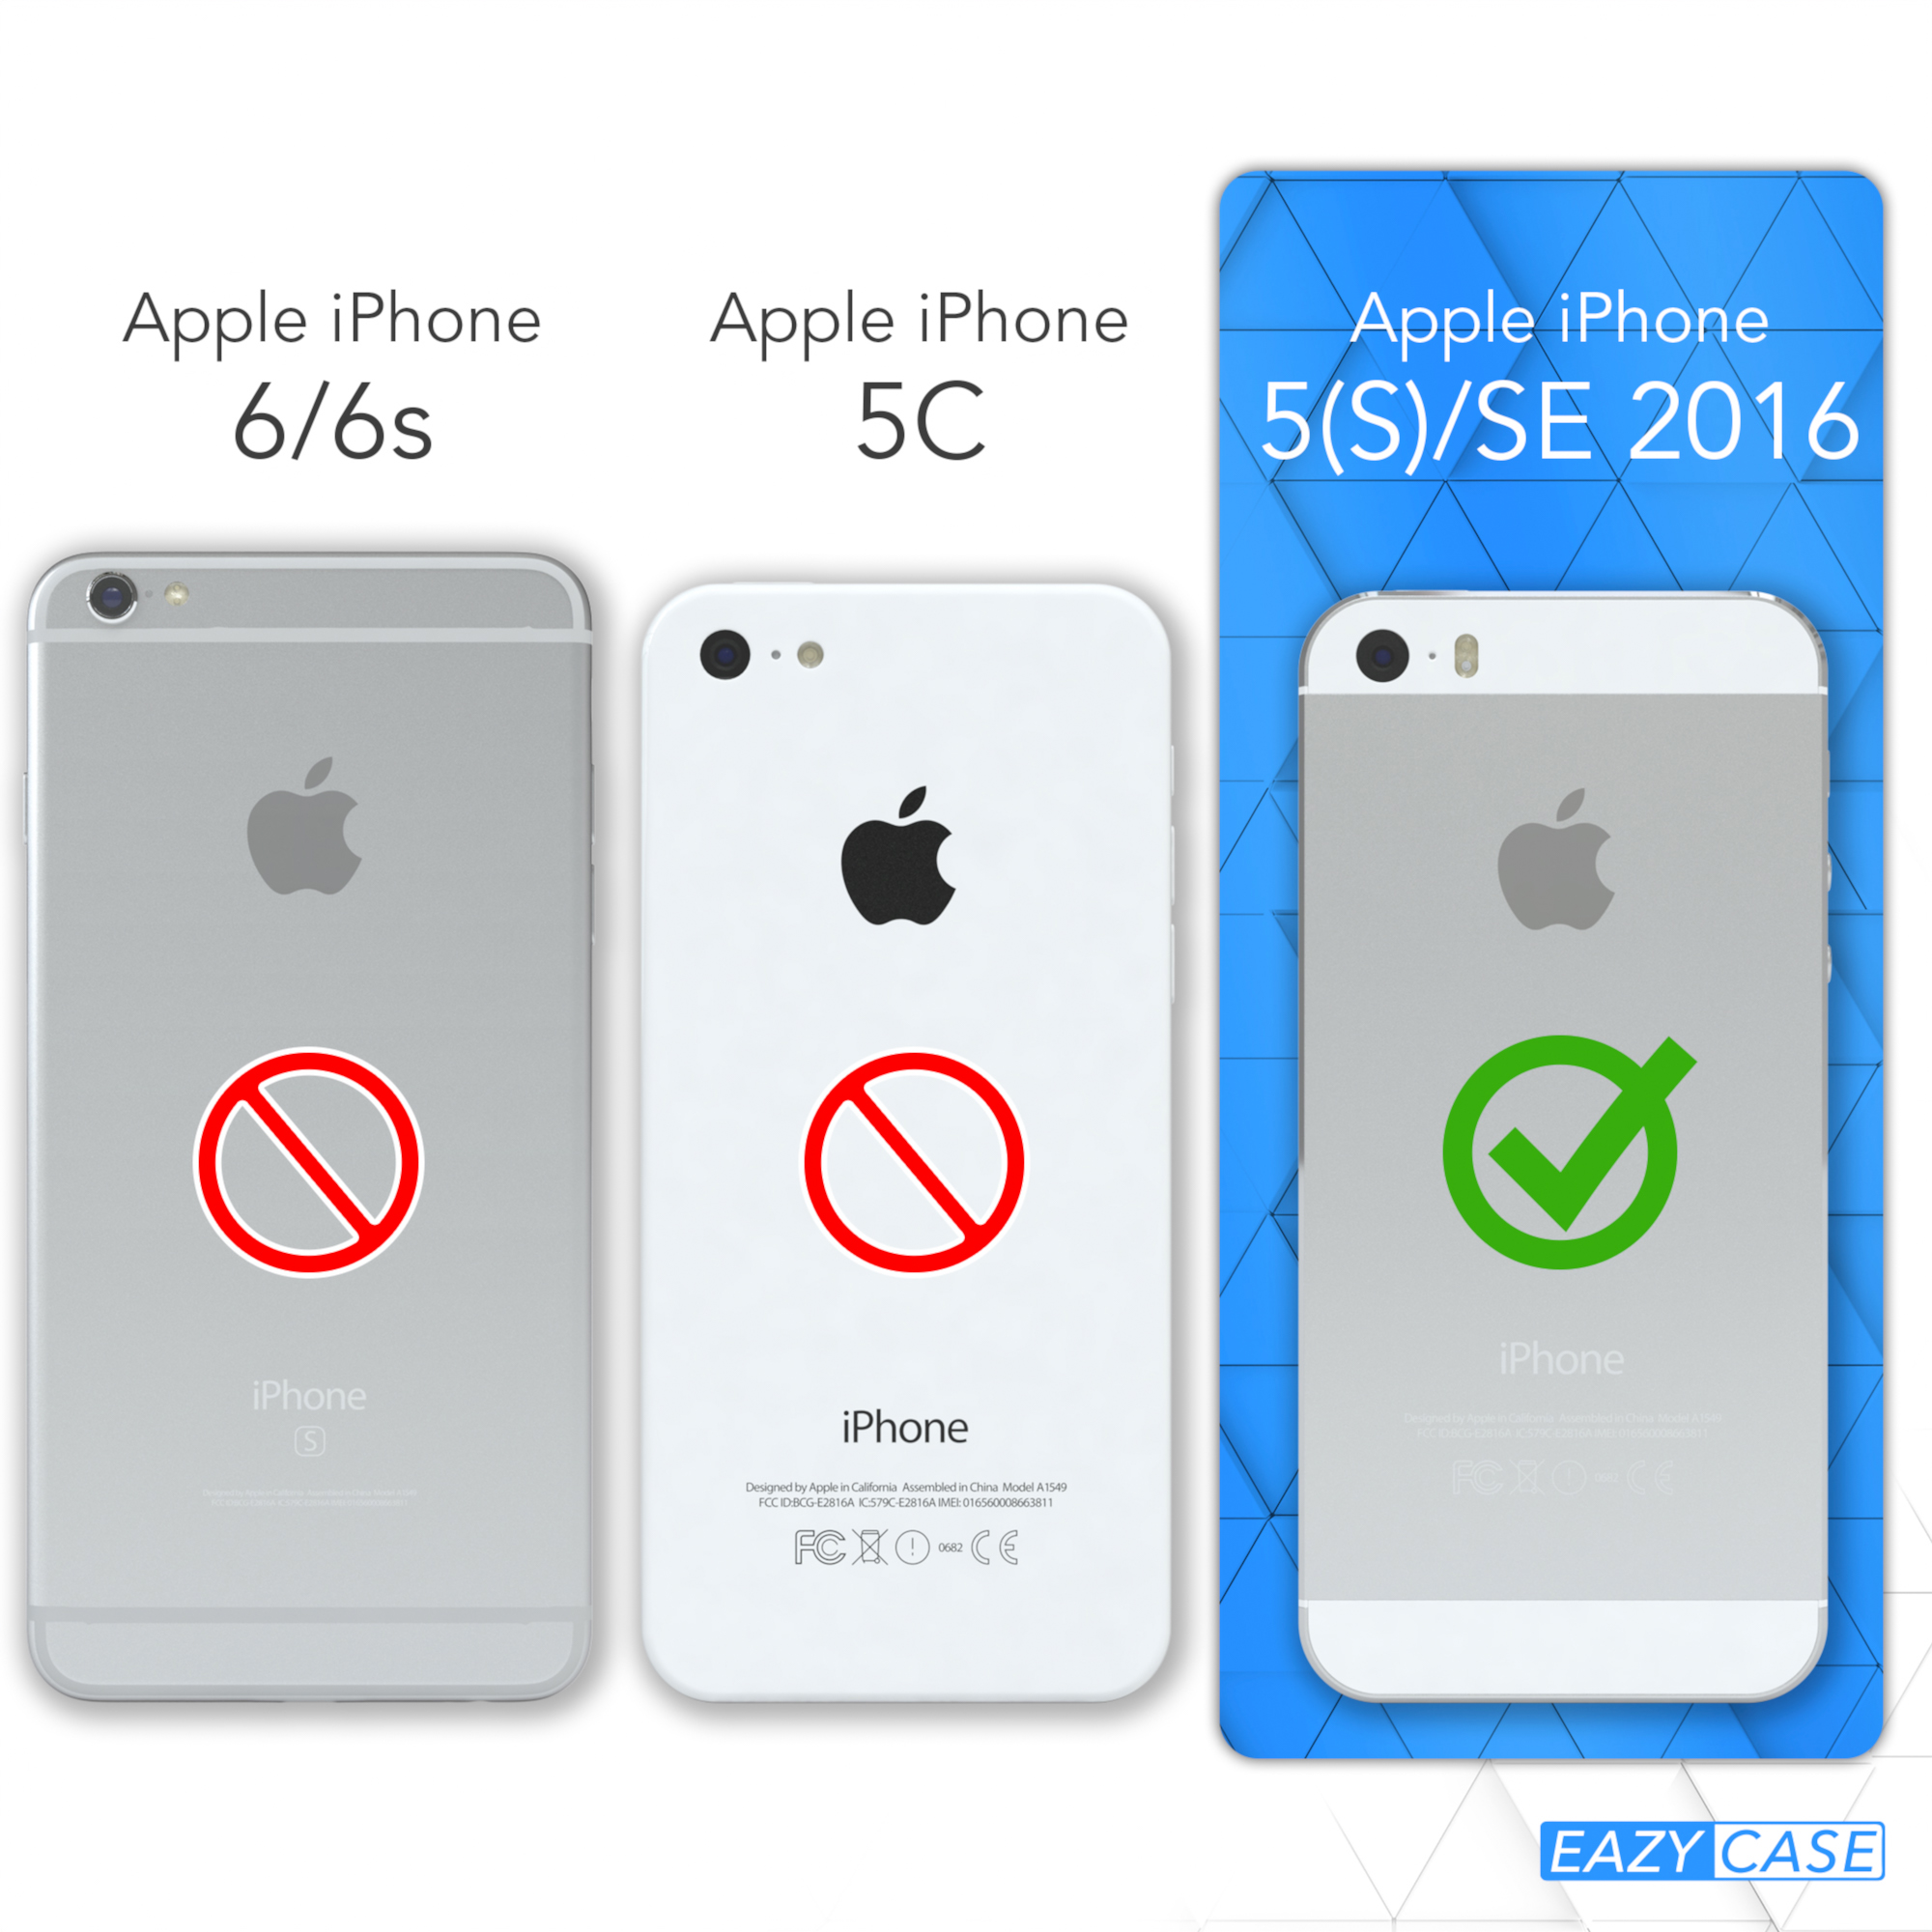 CASE 5S, Umhängetasche, Cover Schwarz iPhone mit / Clear iPhone SE 5 Umhängeband, Apple, 2016, EAZY